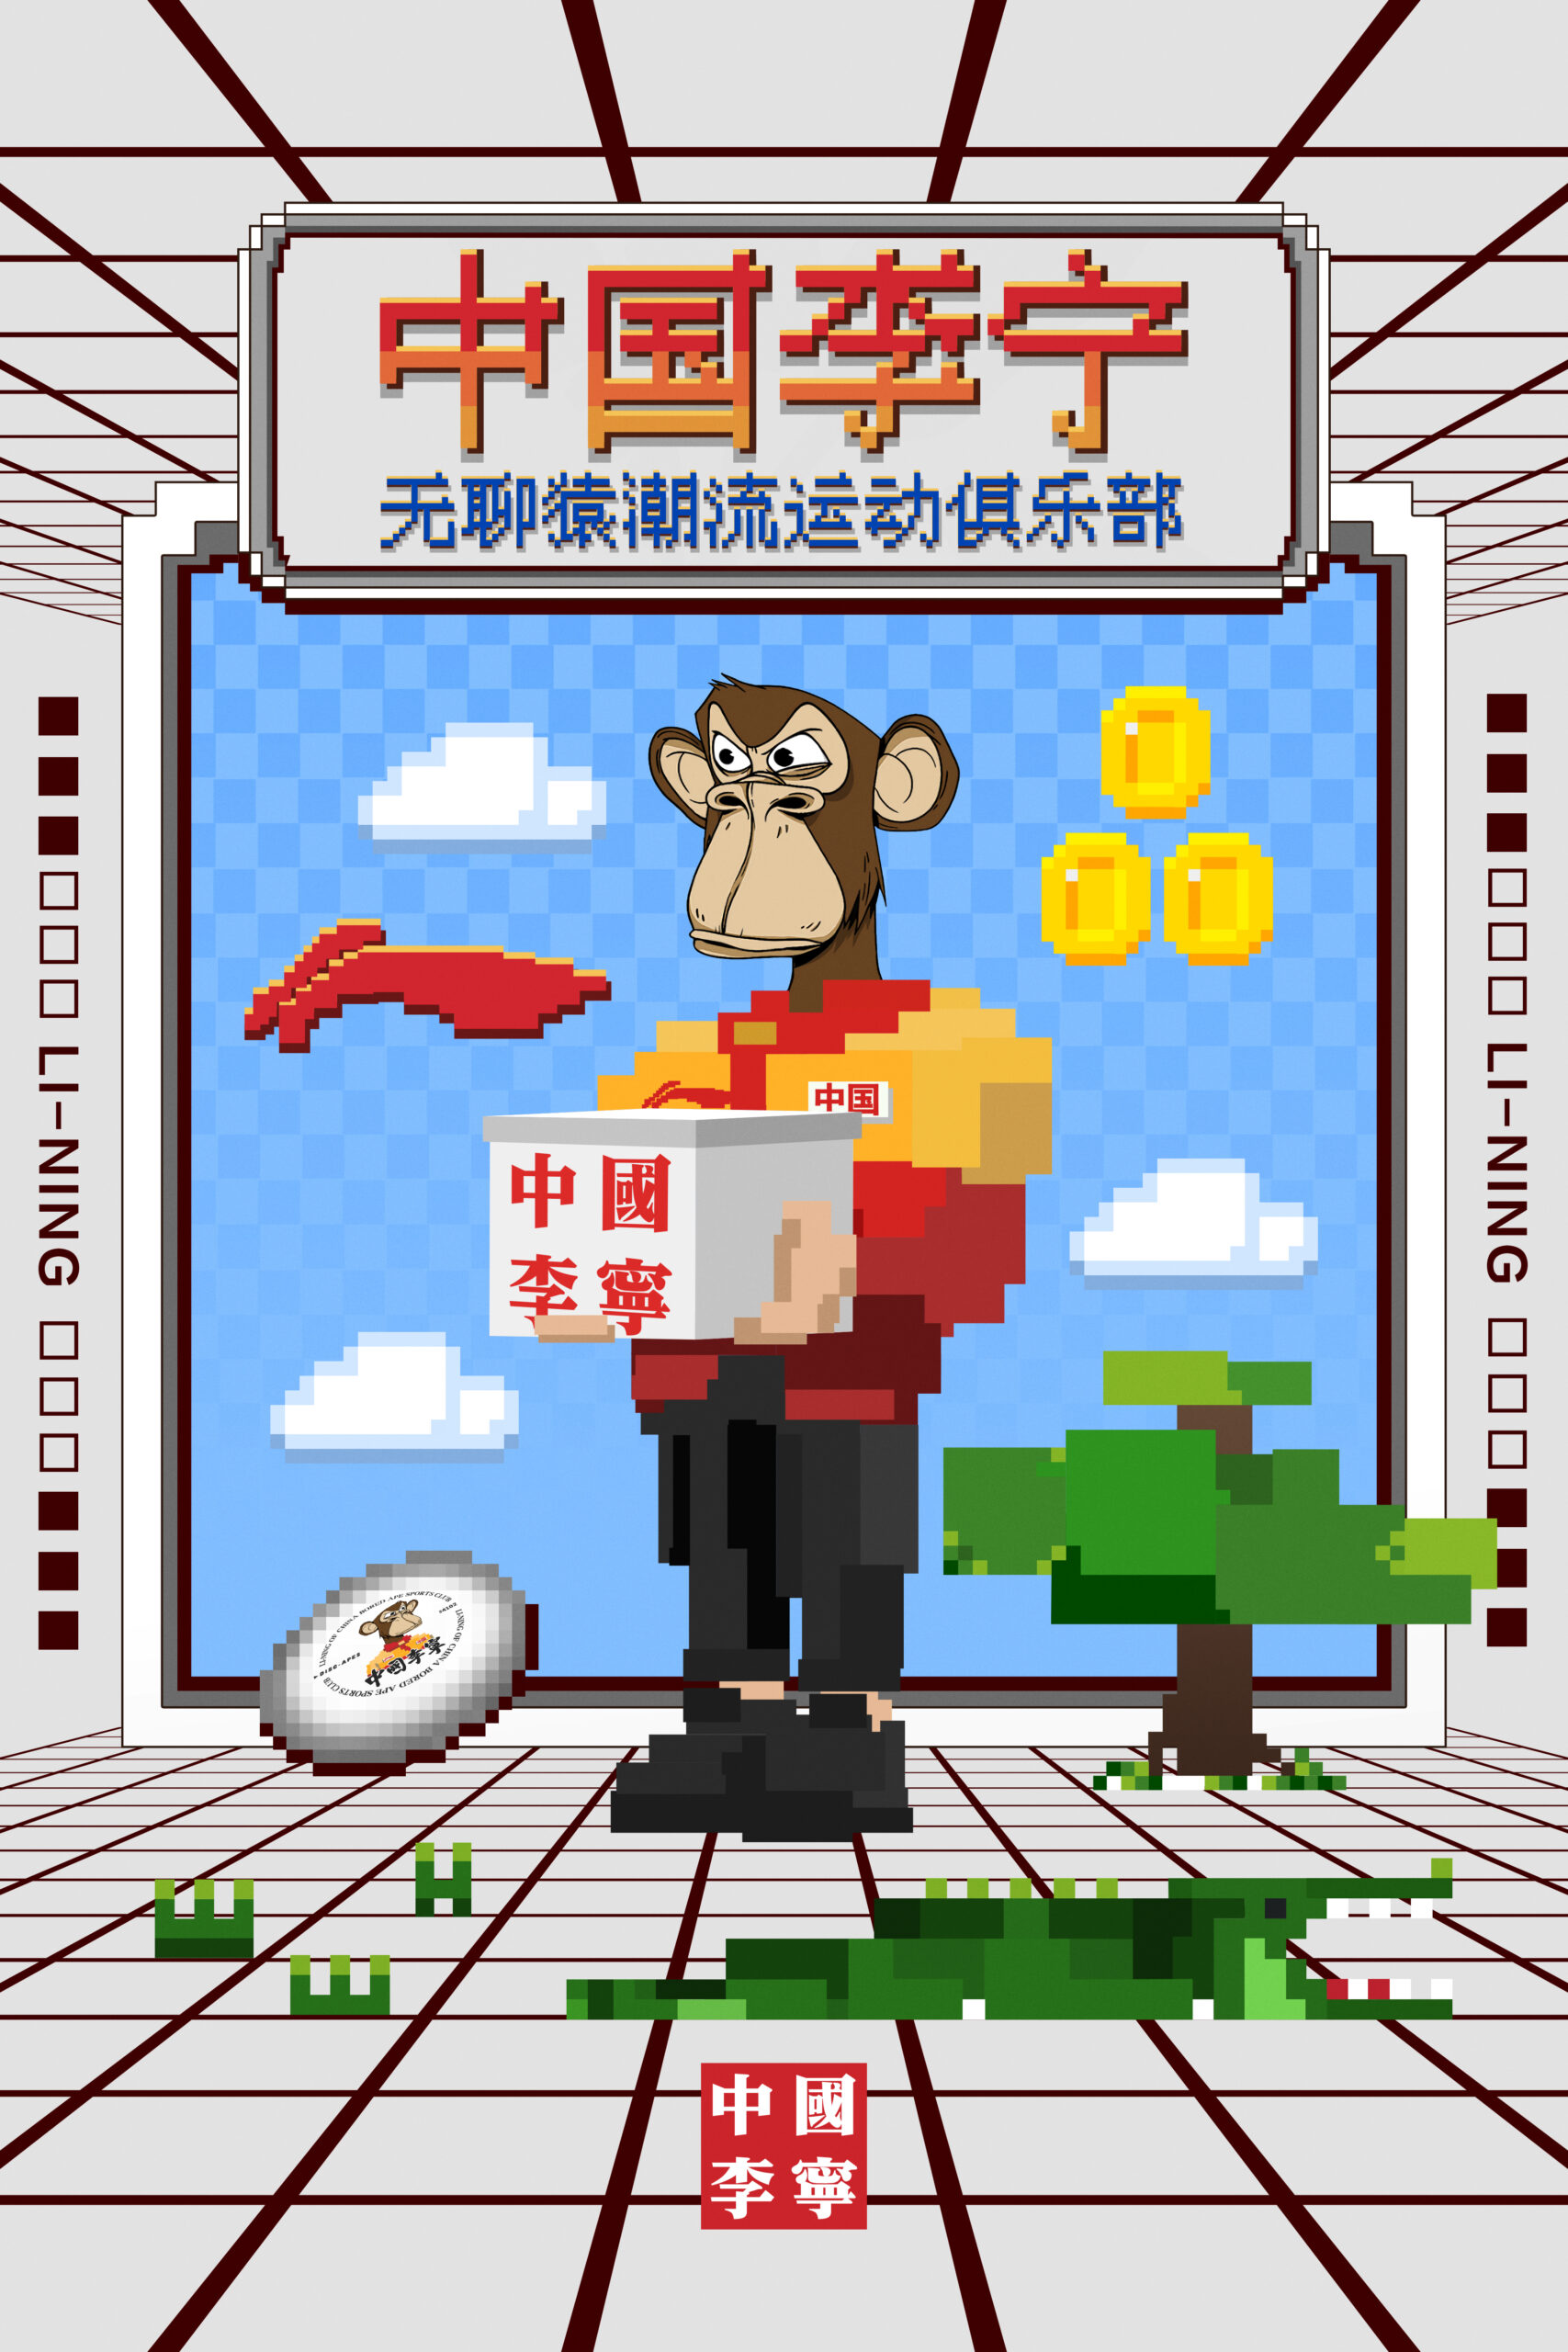 无聊猿编号#4102 成为中国李宁「无聊猿潮流运动俱乐部」主理人